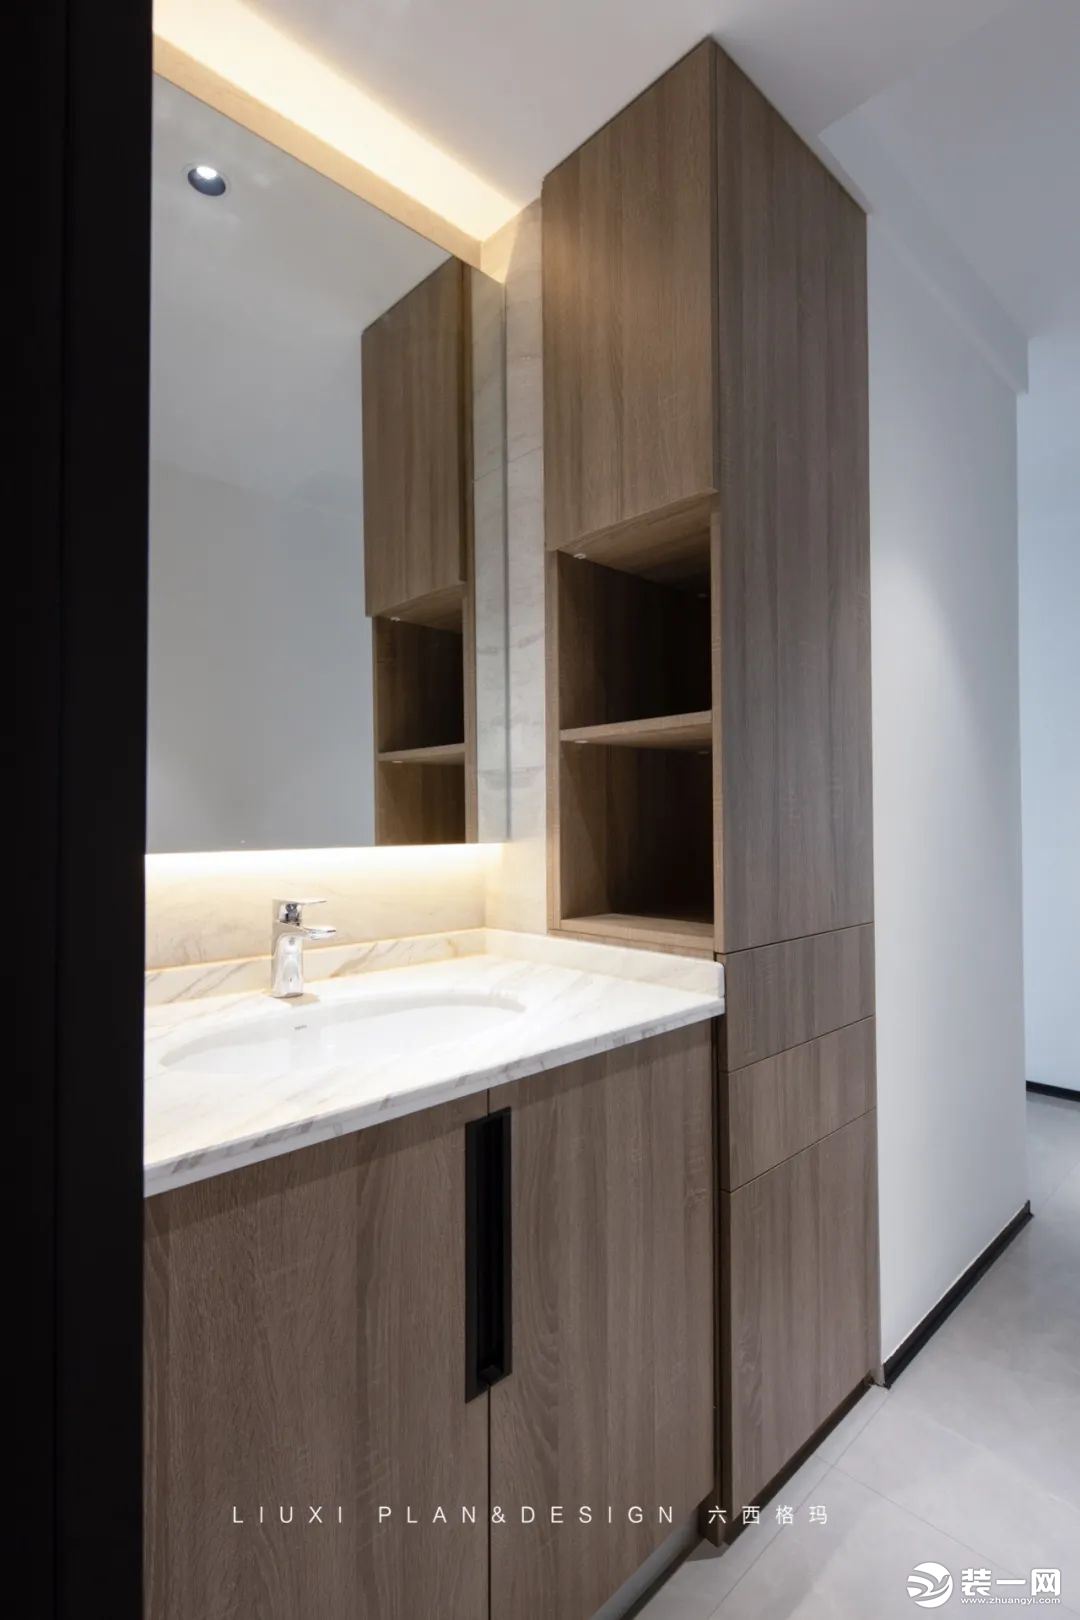 洗漱台作为卫生间最常使用的区域，设计了L型浴室柜，轻松解决卫生间收纳问题，侧面开放式设计，放置平时需